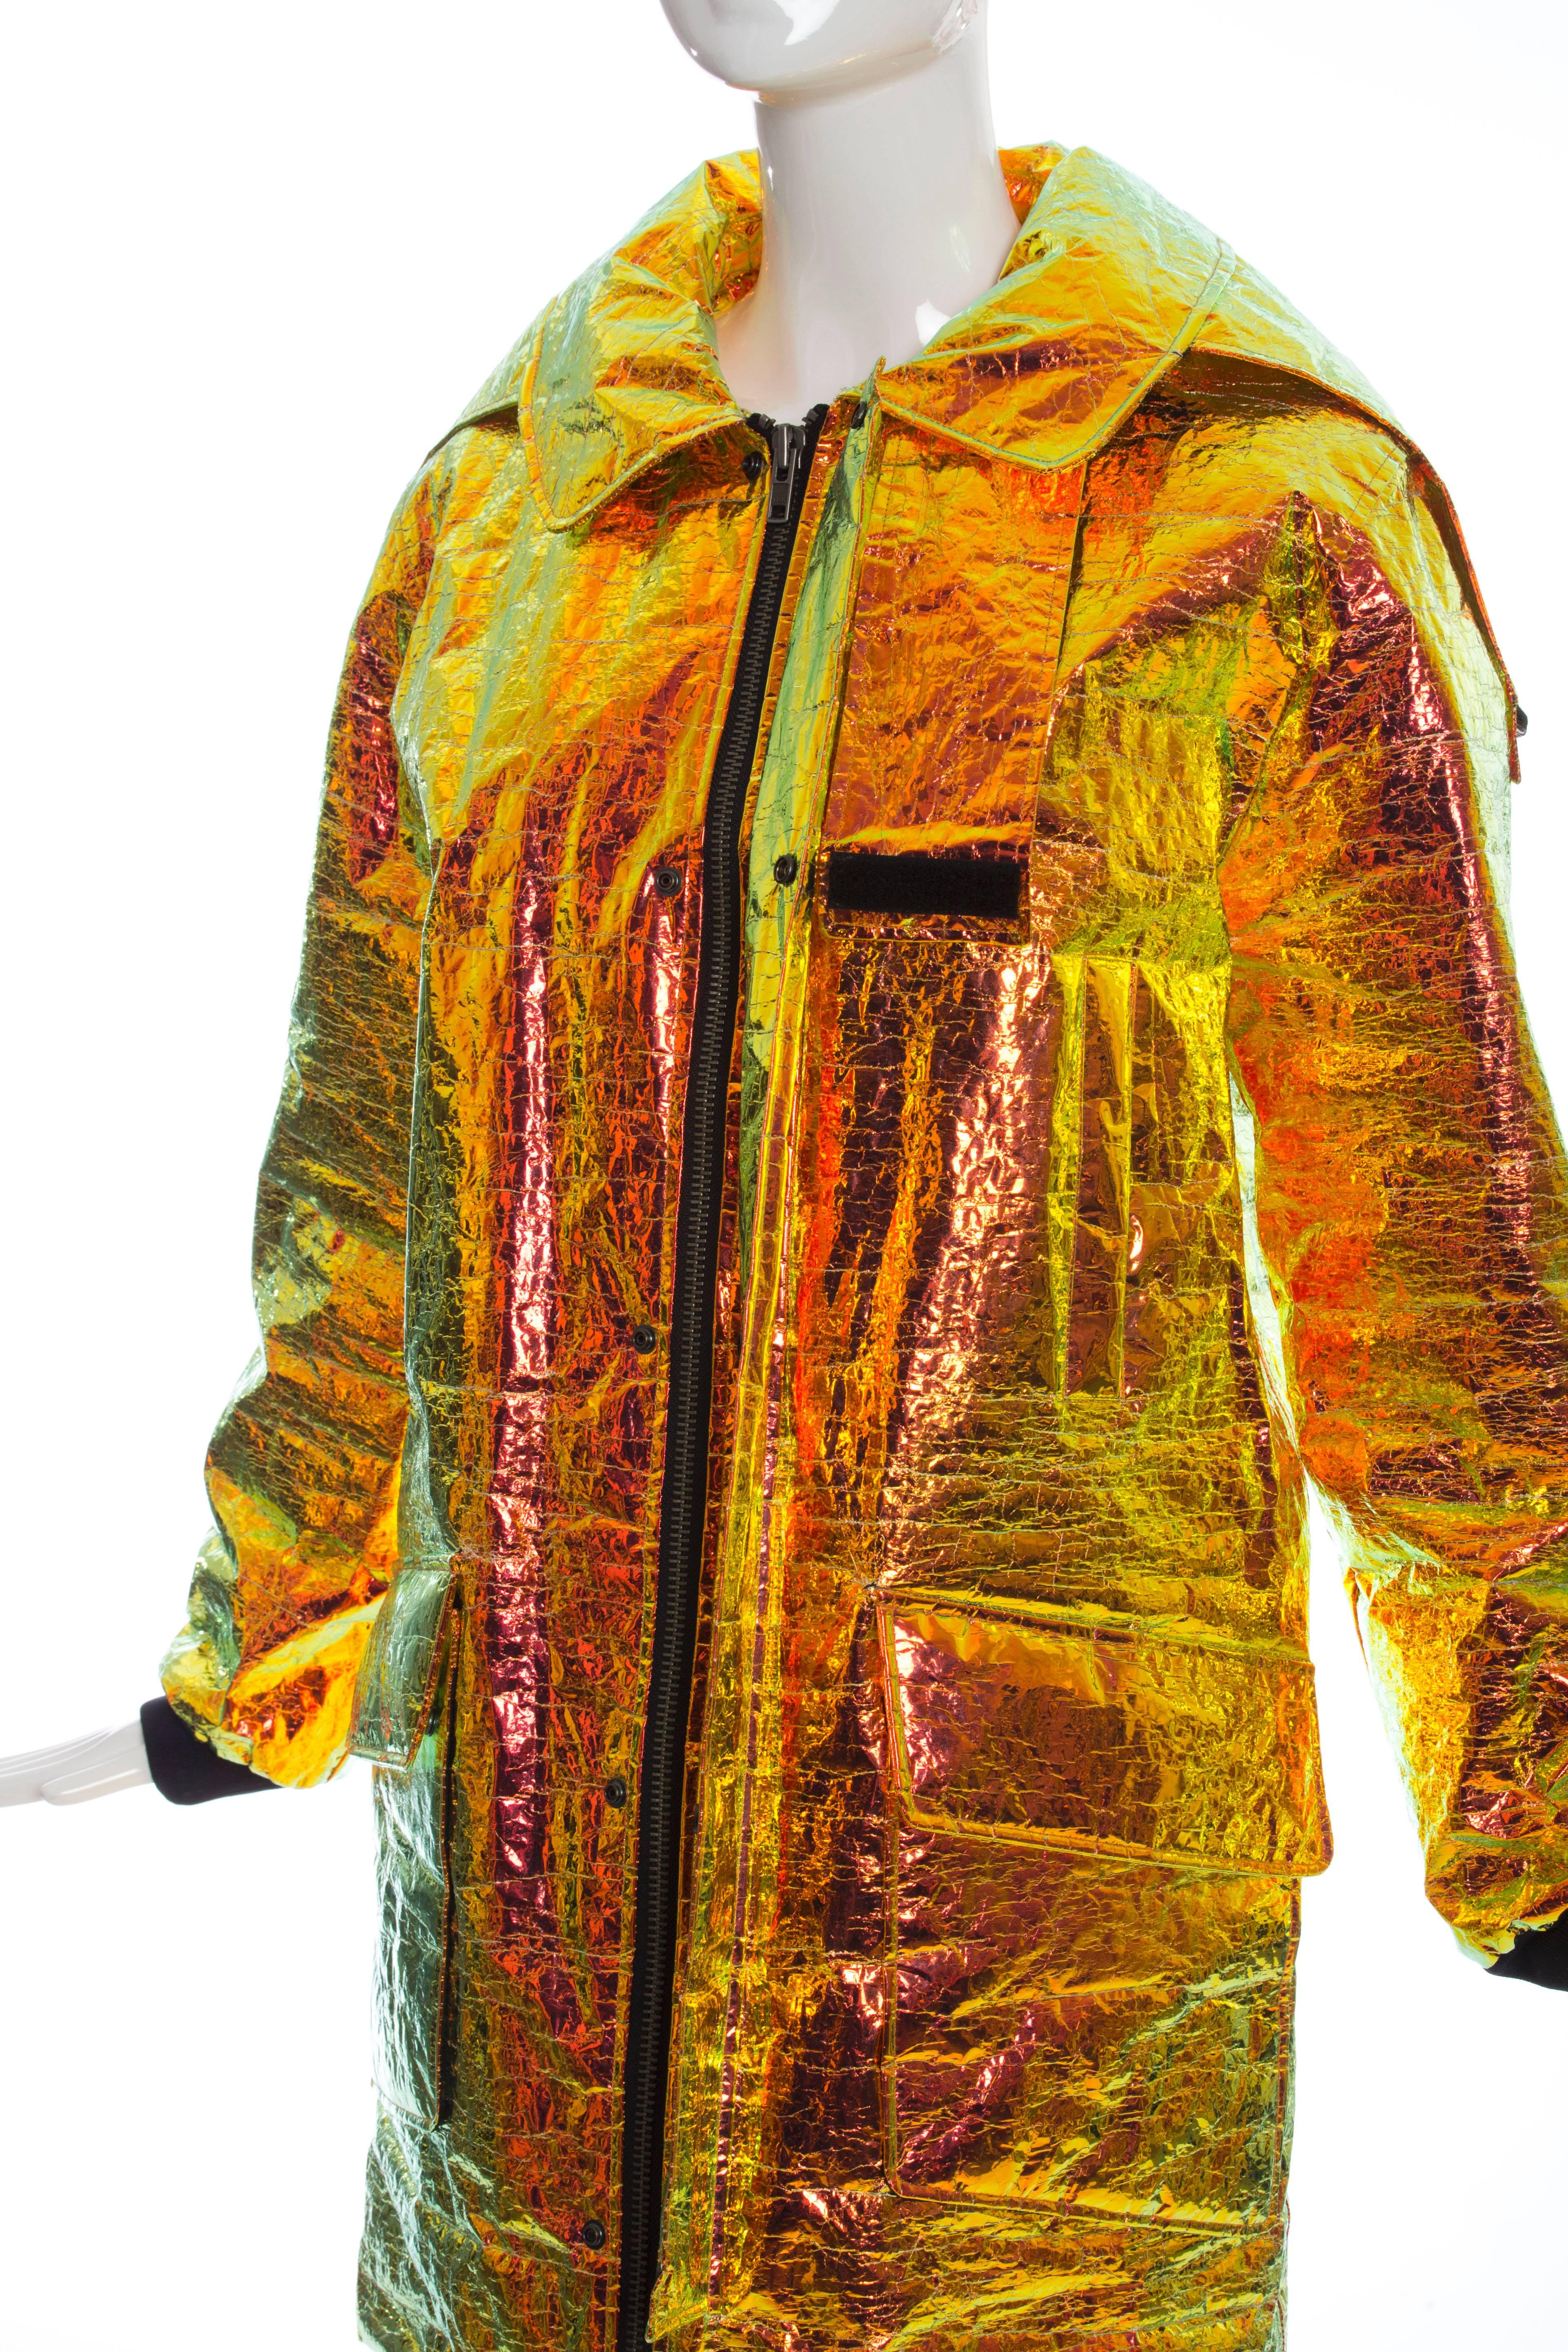 Wanda Nylon Iridescent Metallic Foil Hooded Parka, Autumn - Winter 2014 3